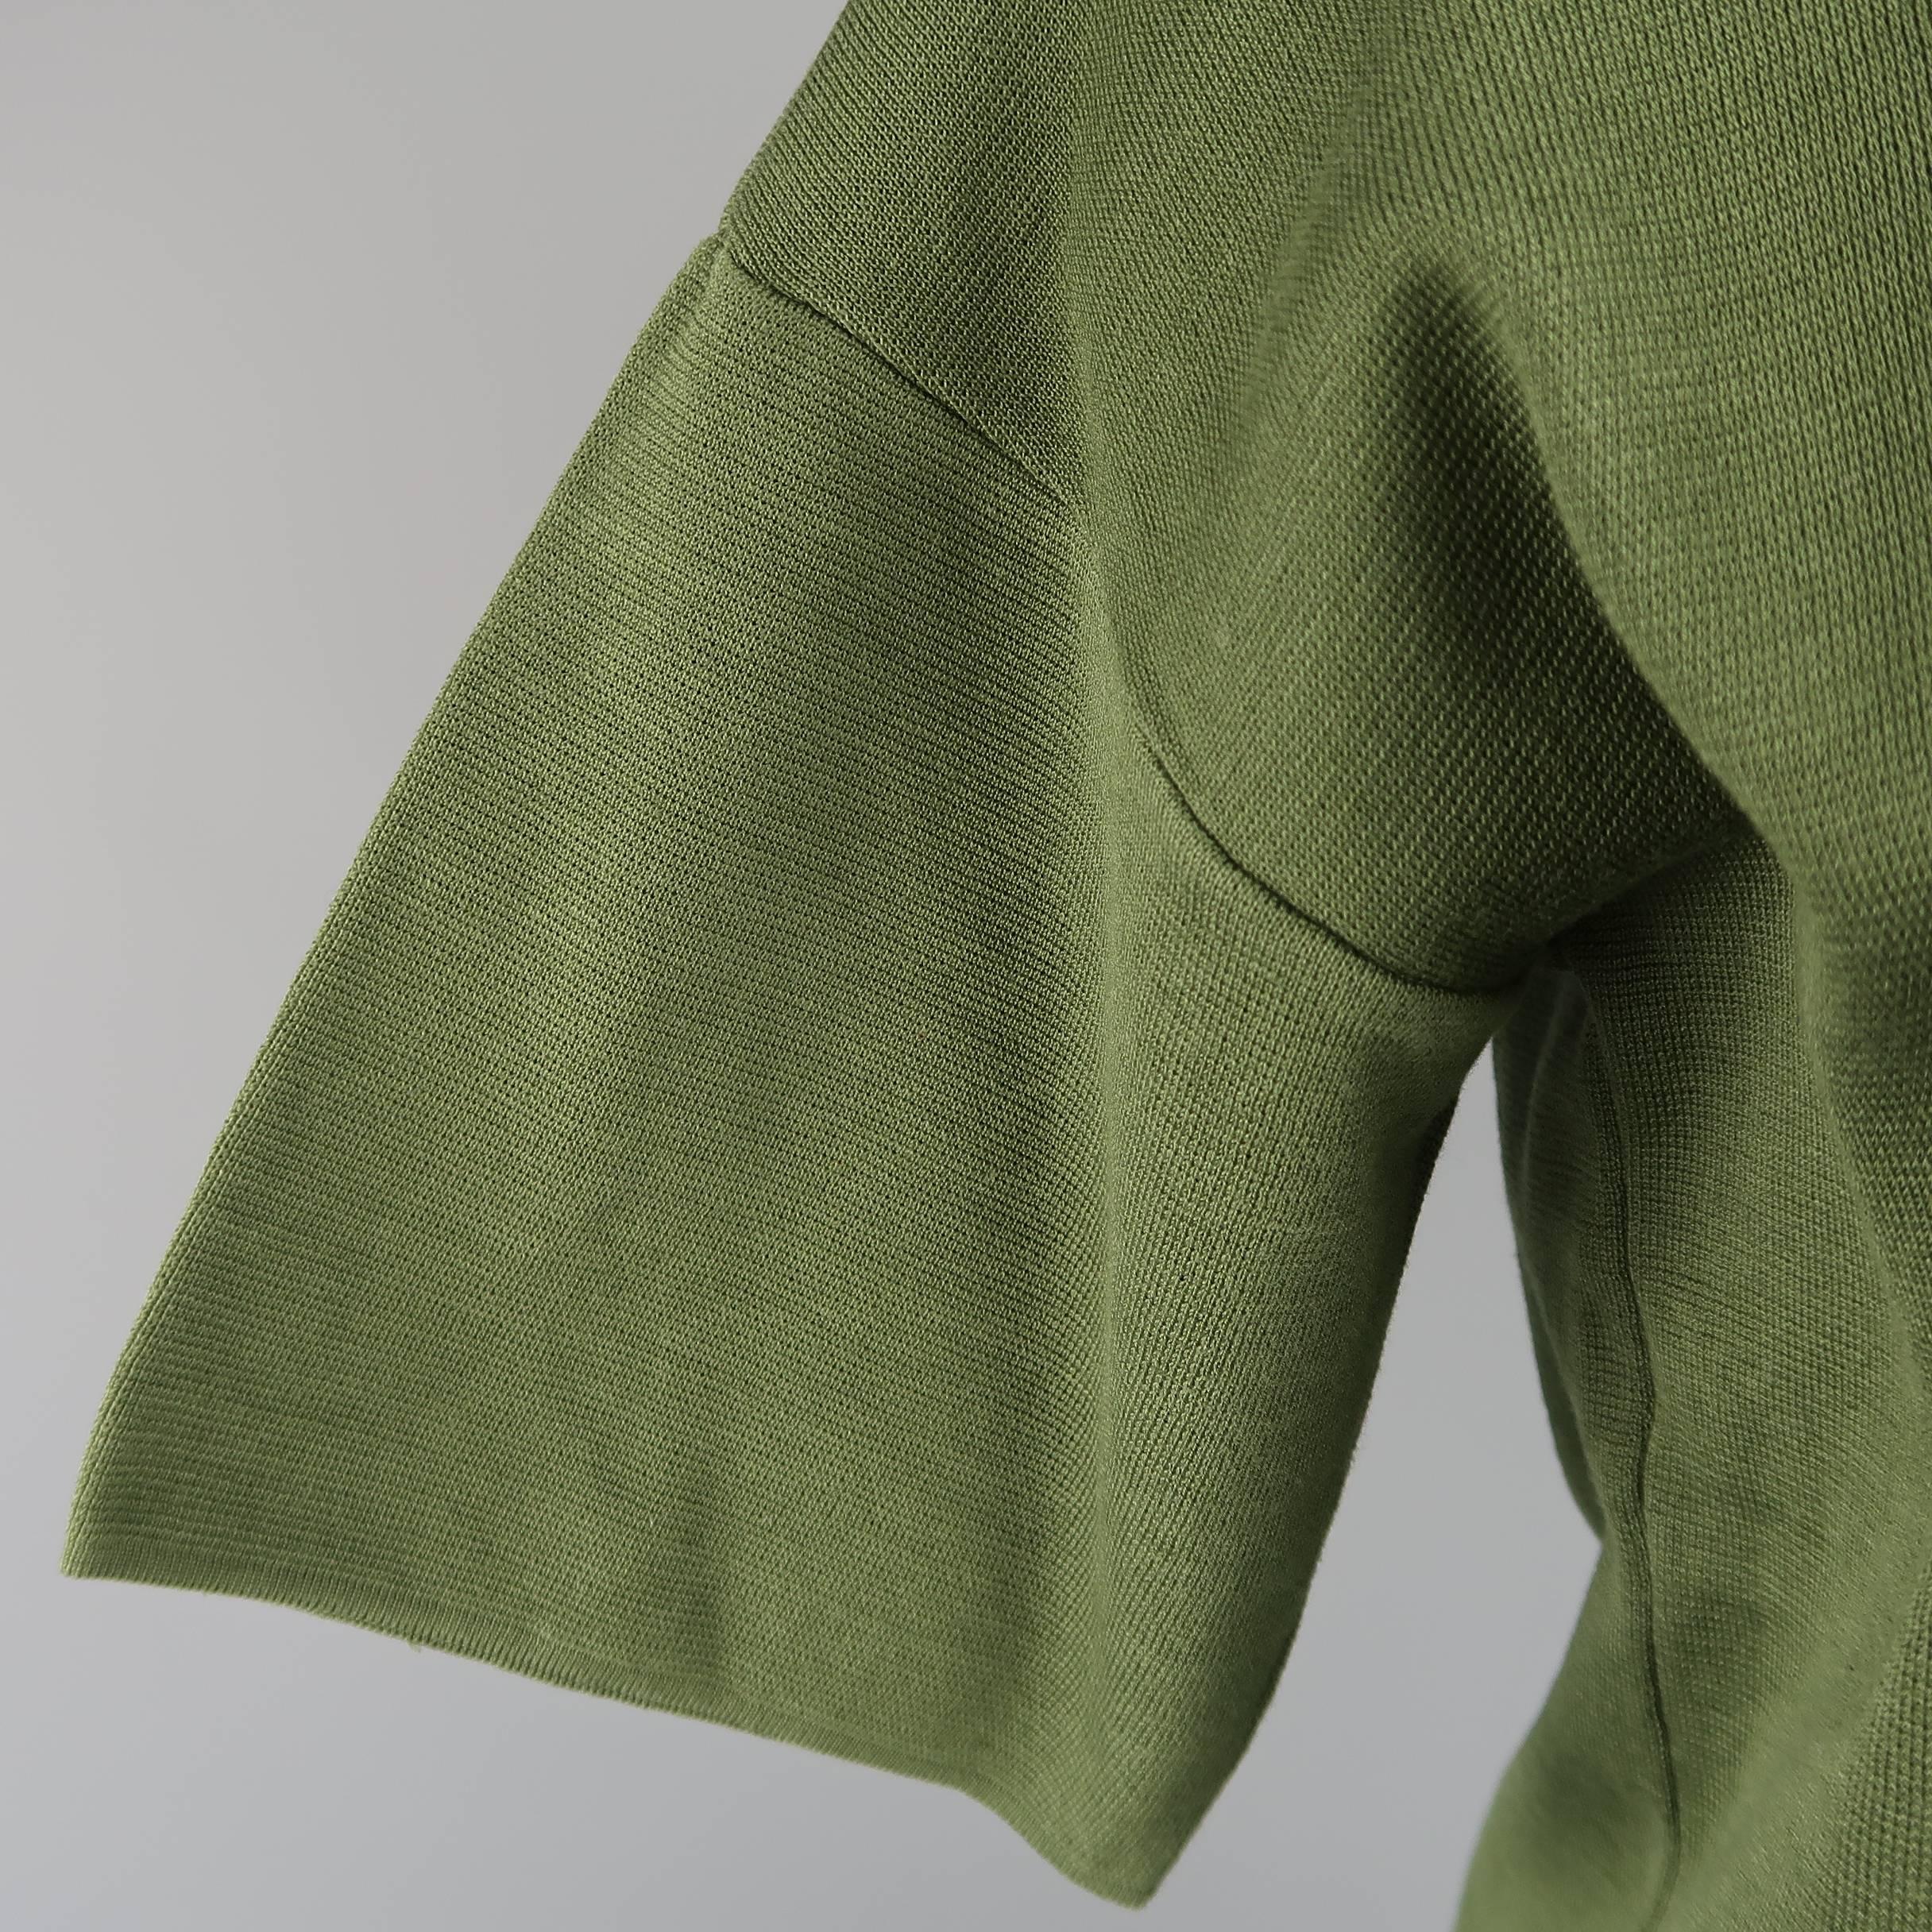 Black JIL SANDER Size S Olive Cotton Knit Crewnek Short Sleeve Pullover